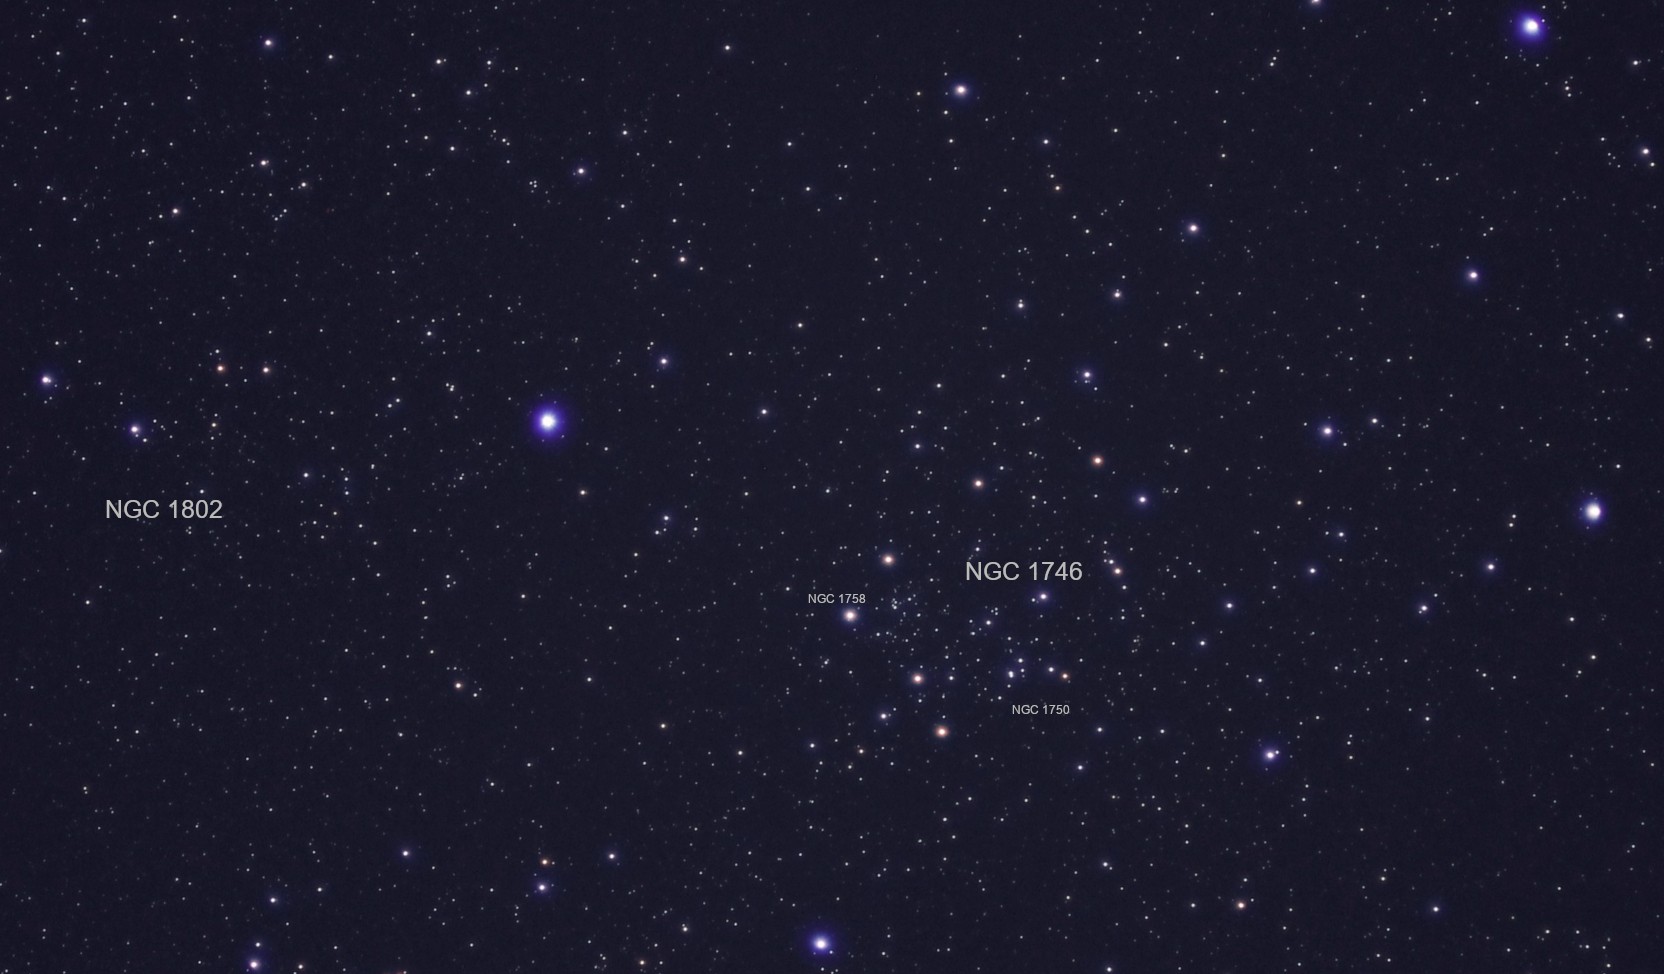 Az NGC 1746, benne az NGC 1750 és 1758, valamint az NGC 1802 nyílthalmazok Cseh Viktor felvételén, ami egy kicsi, 7 cm átmérőjű távcsővel készült. Forrás: www.eszlelesek.mcse.hu